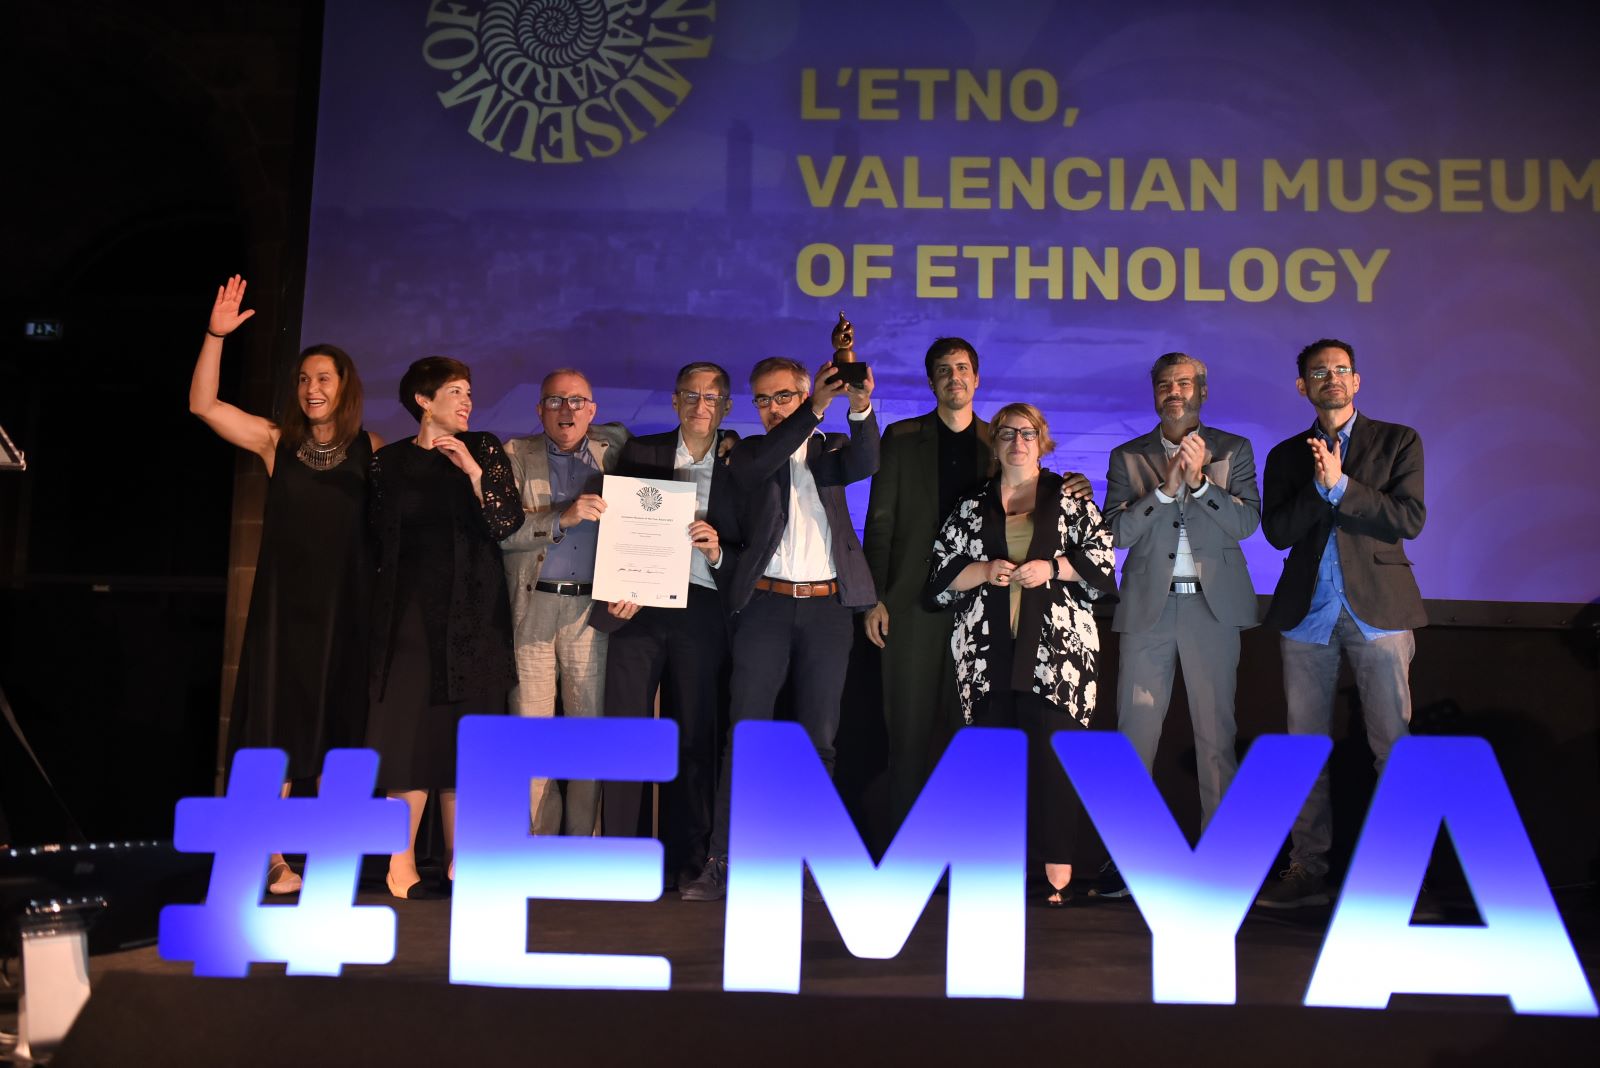 El museo valenciano L’Etno, de etnología, premiado como el mejor de Europa